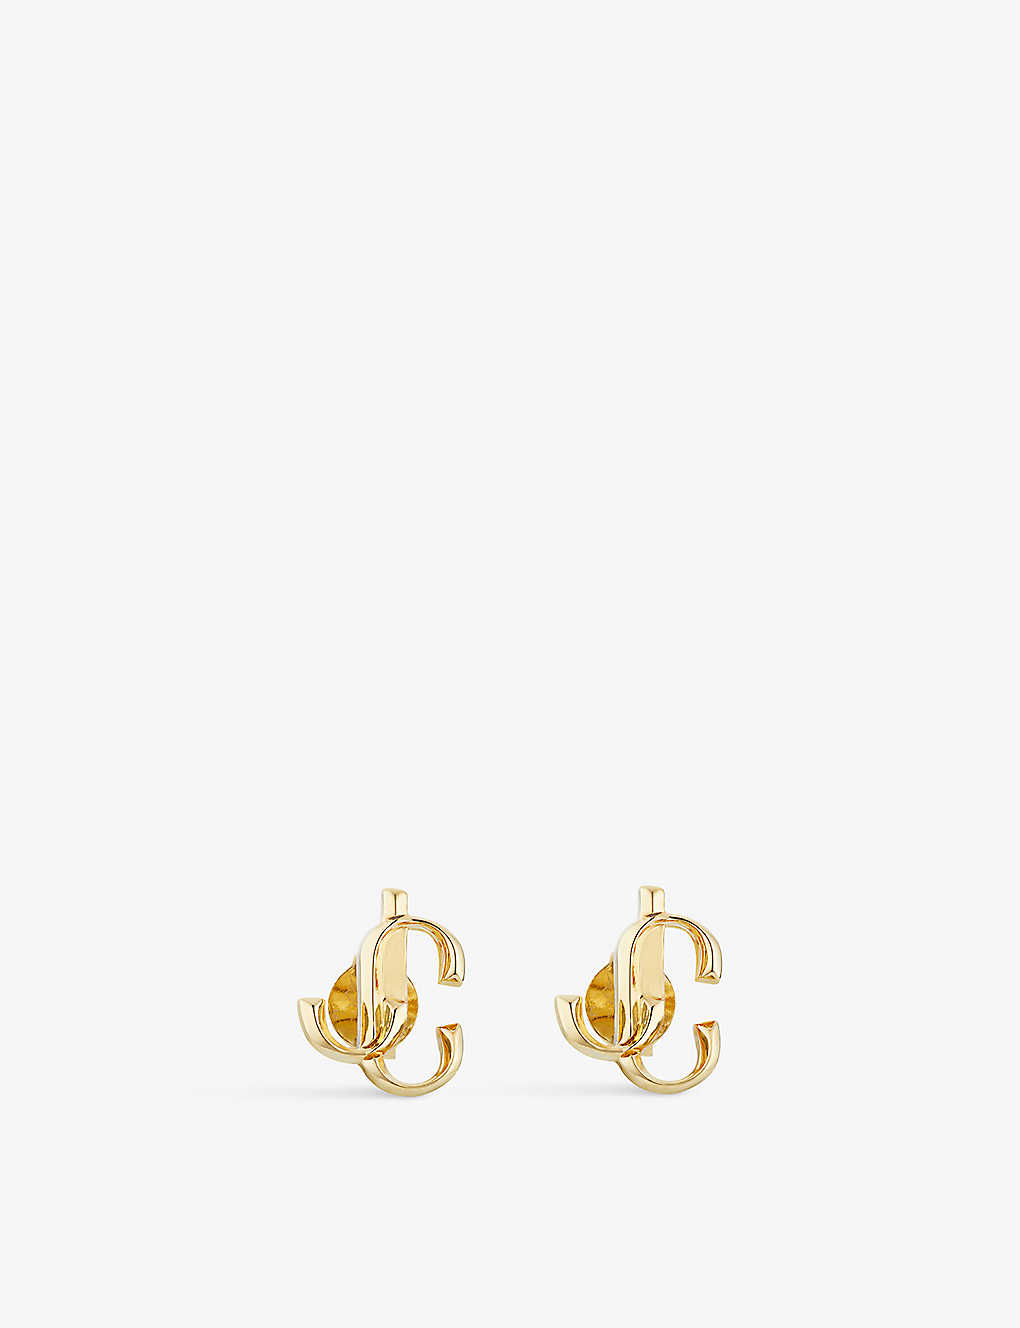 Shop Jimmy Choo Jc Logo-embellished Gold-toned Brass Stud Earrings